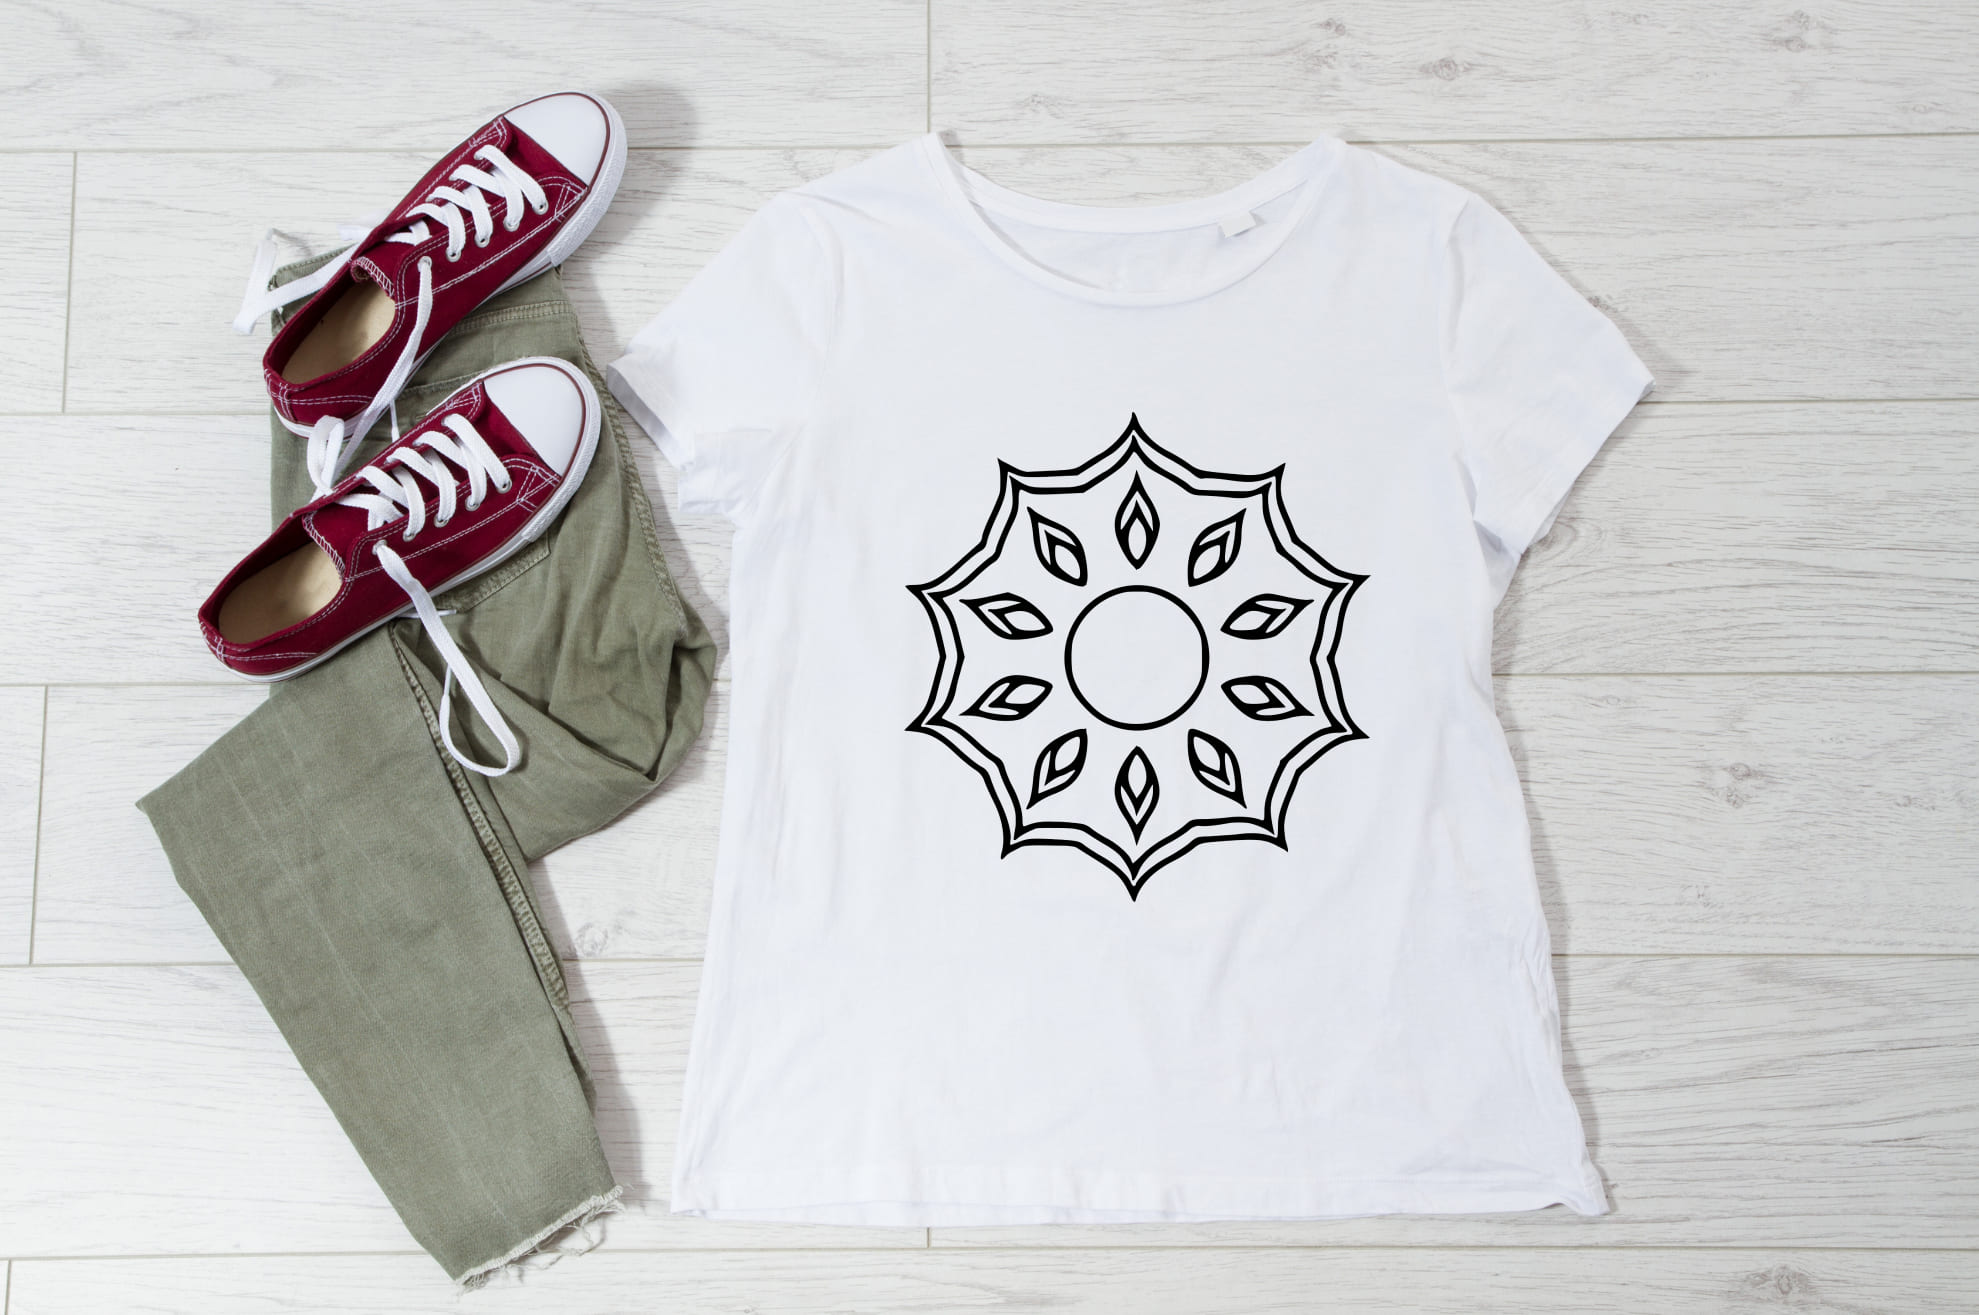 Minimalistic mandala illustration on the white t-shirt.